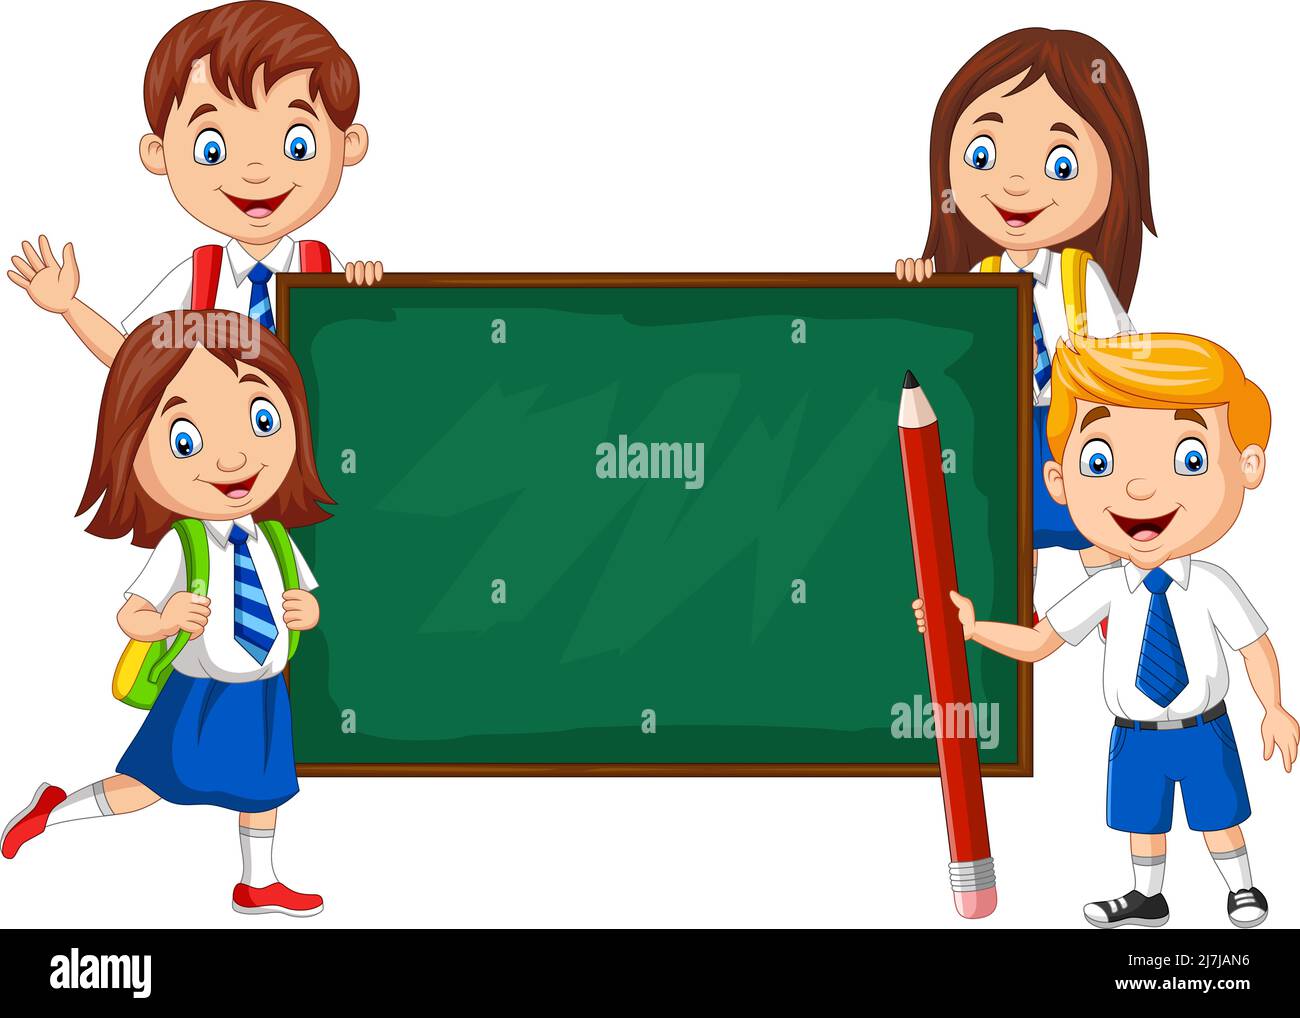 Cartoon school children with chalkboard Stock Vector